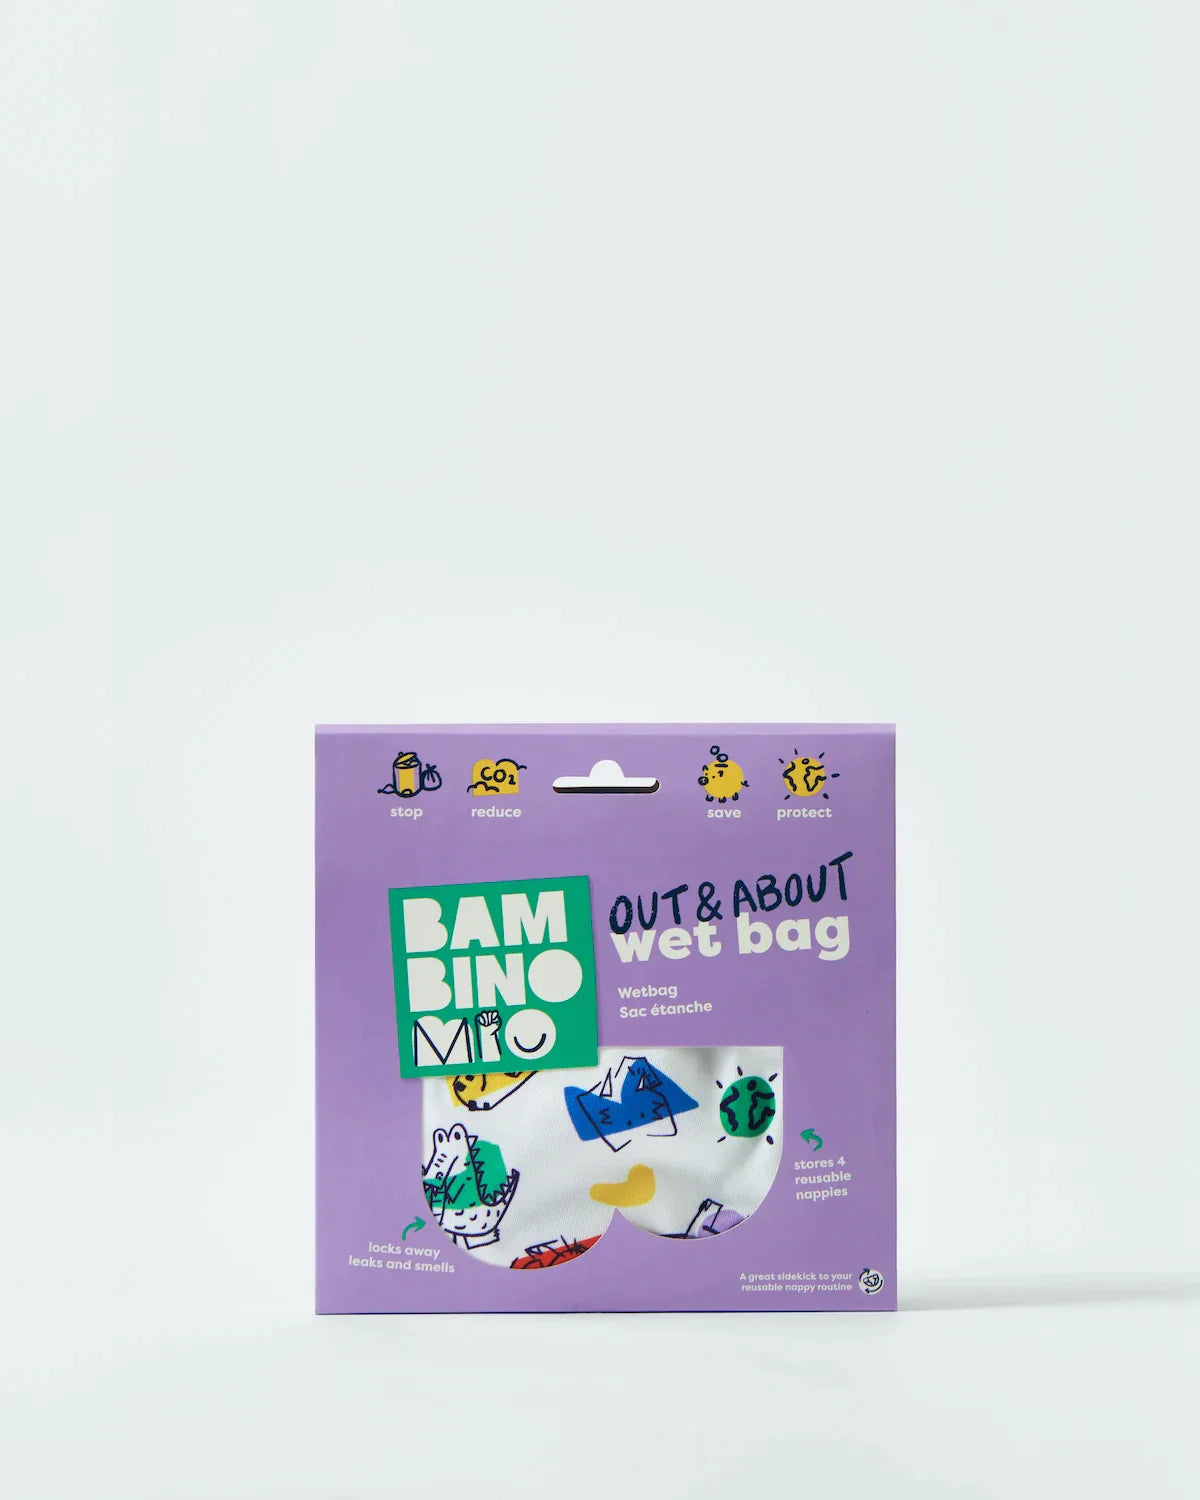 Out & about wet bag - Bambino Mio (EU)